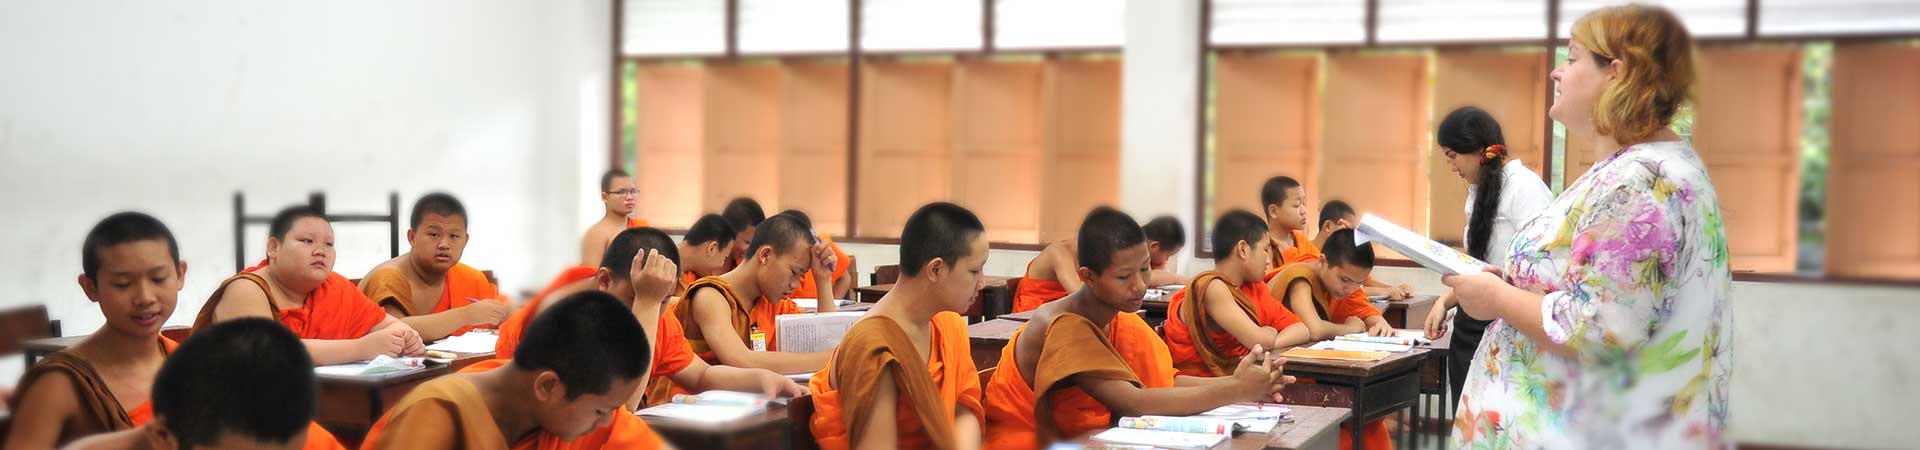 Volontariato nell'insegnamento dell'inglese ai monaci a Chiang Mai in Thailandia